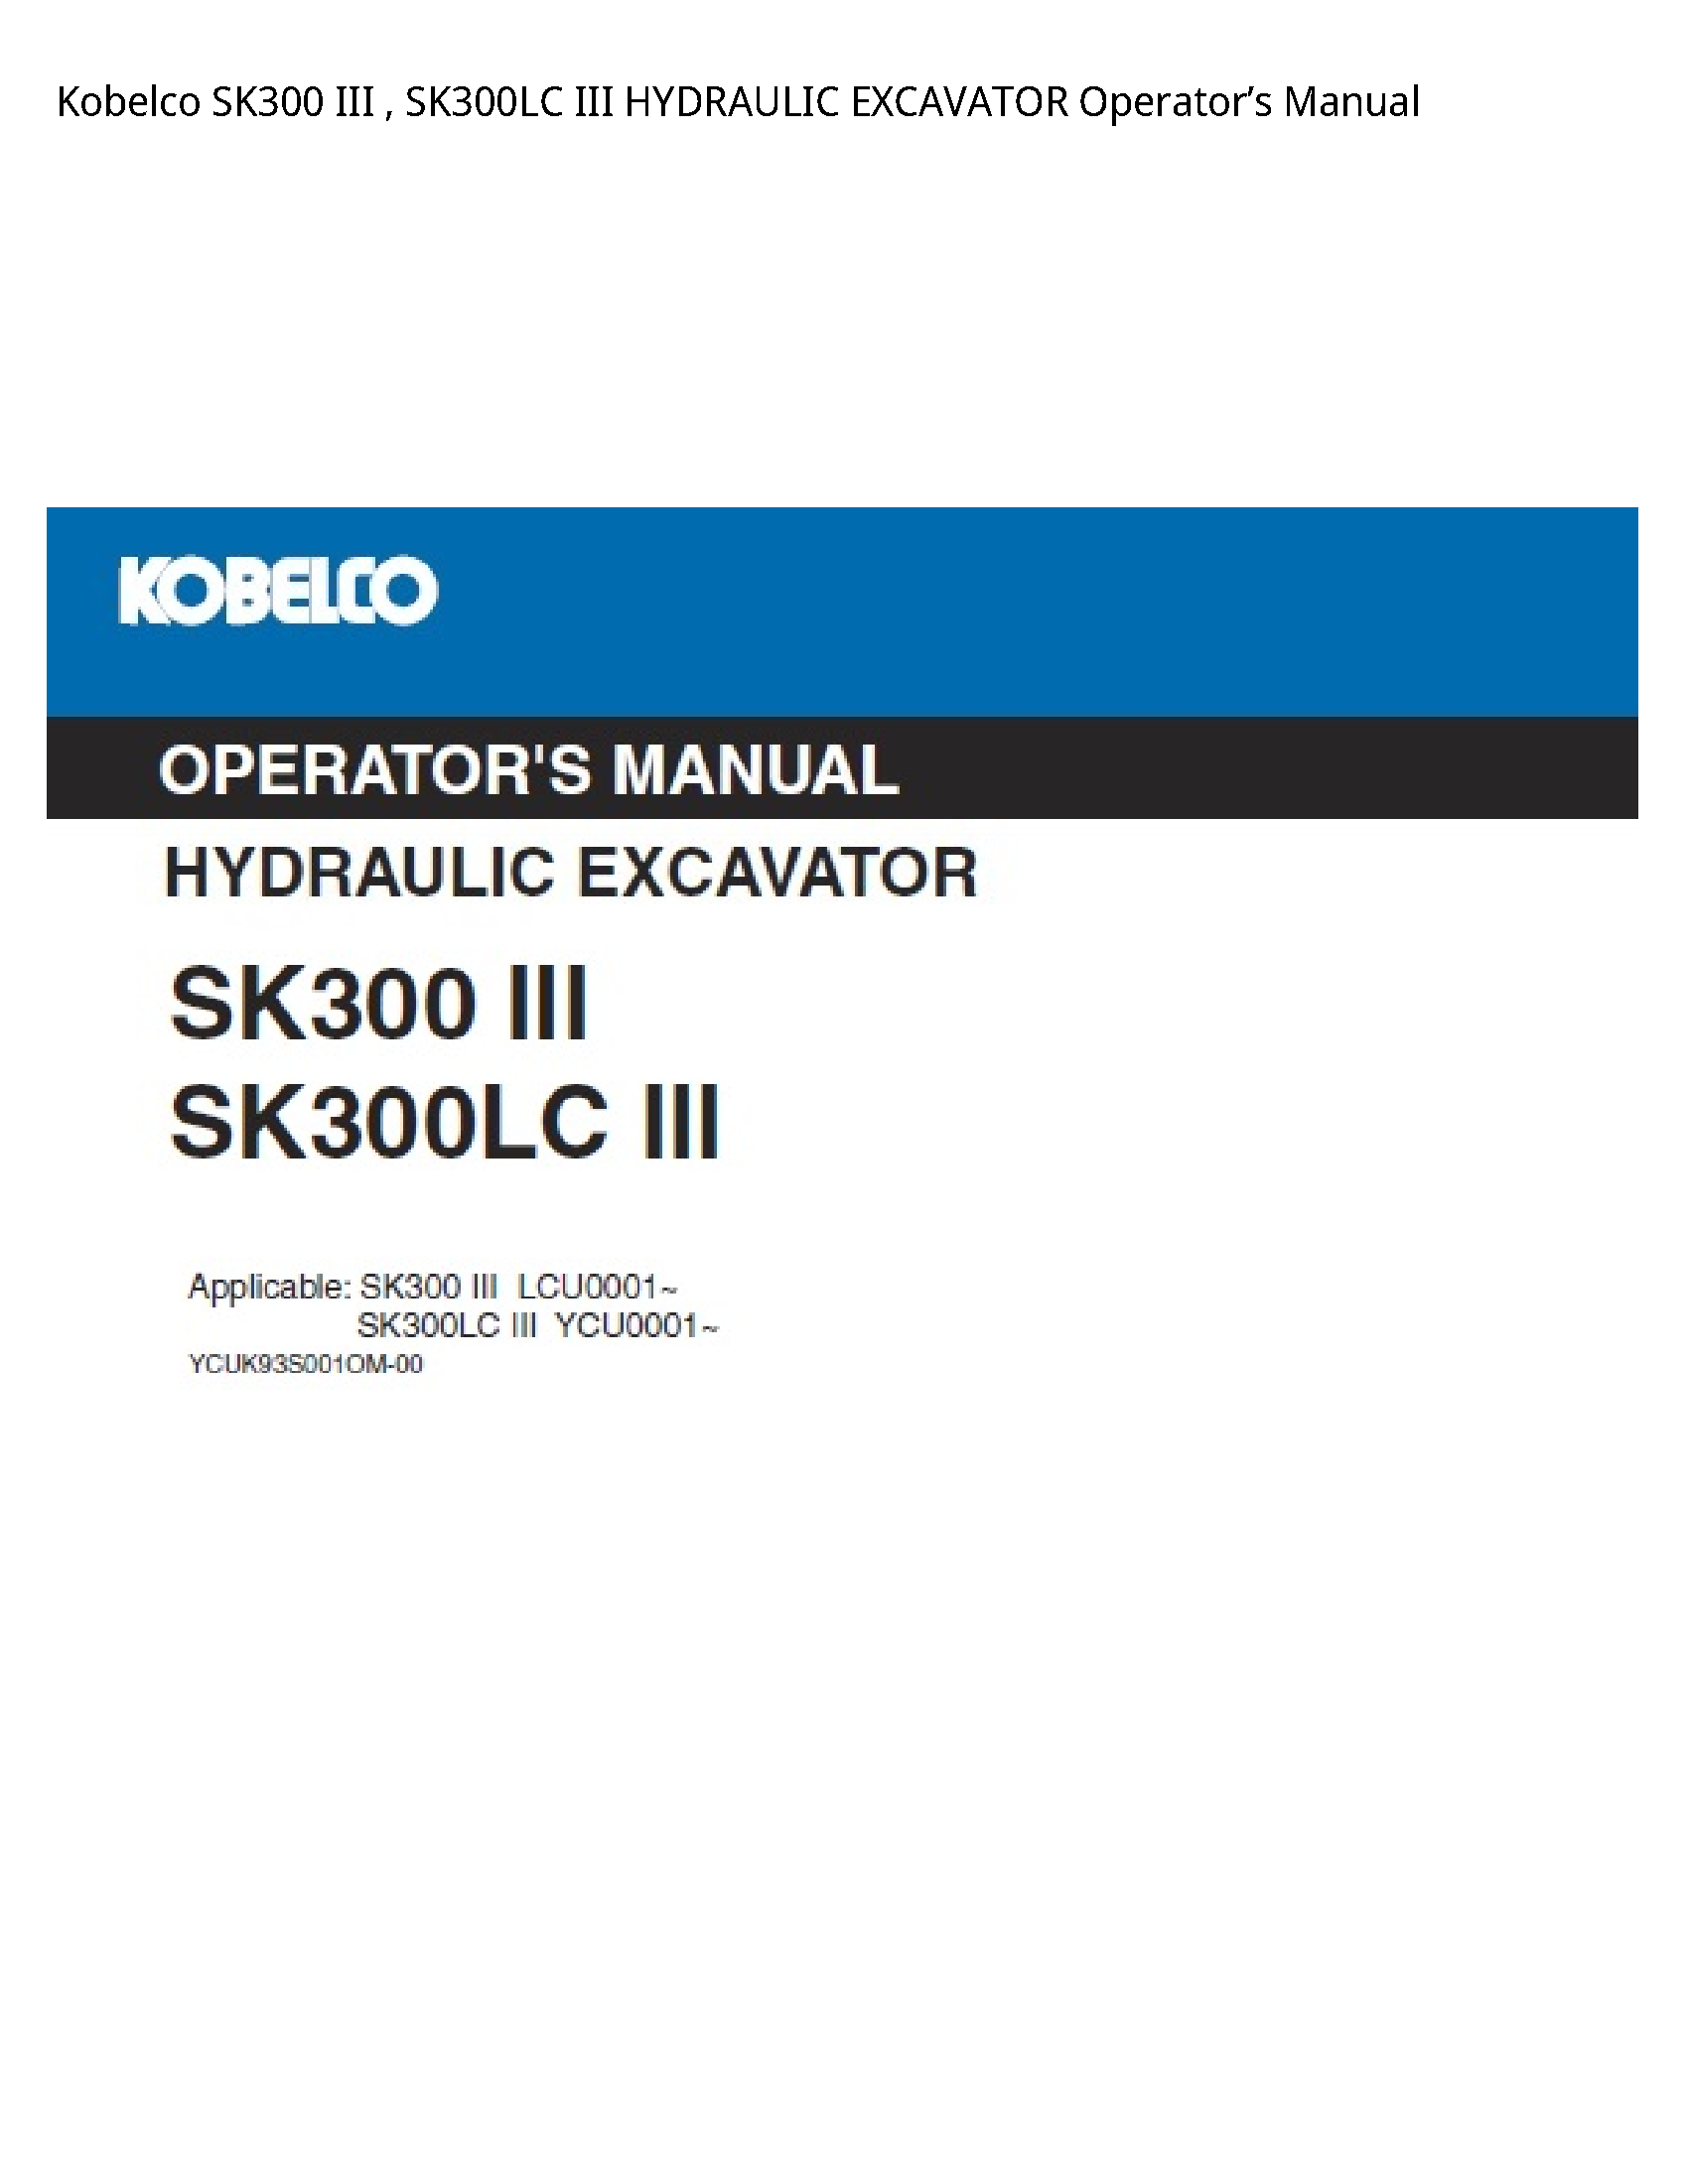 Kobelco SK300 III III HYDRAULIC EXCAVATOR Operator’s manual